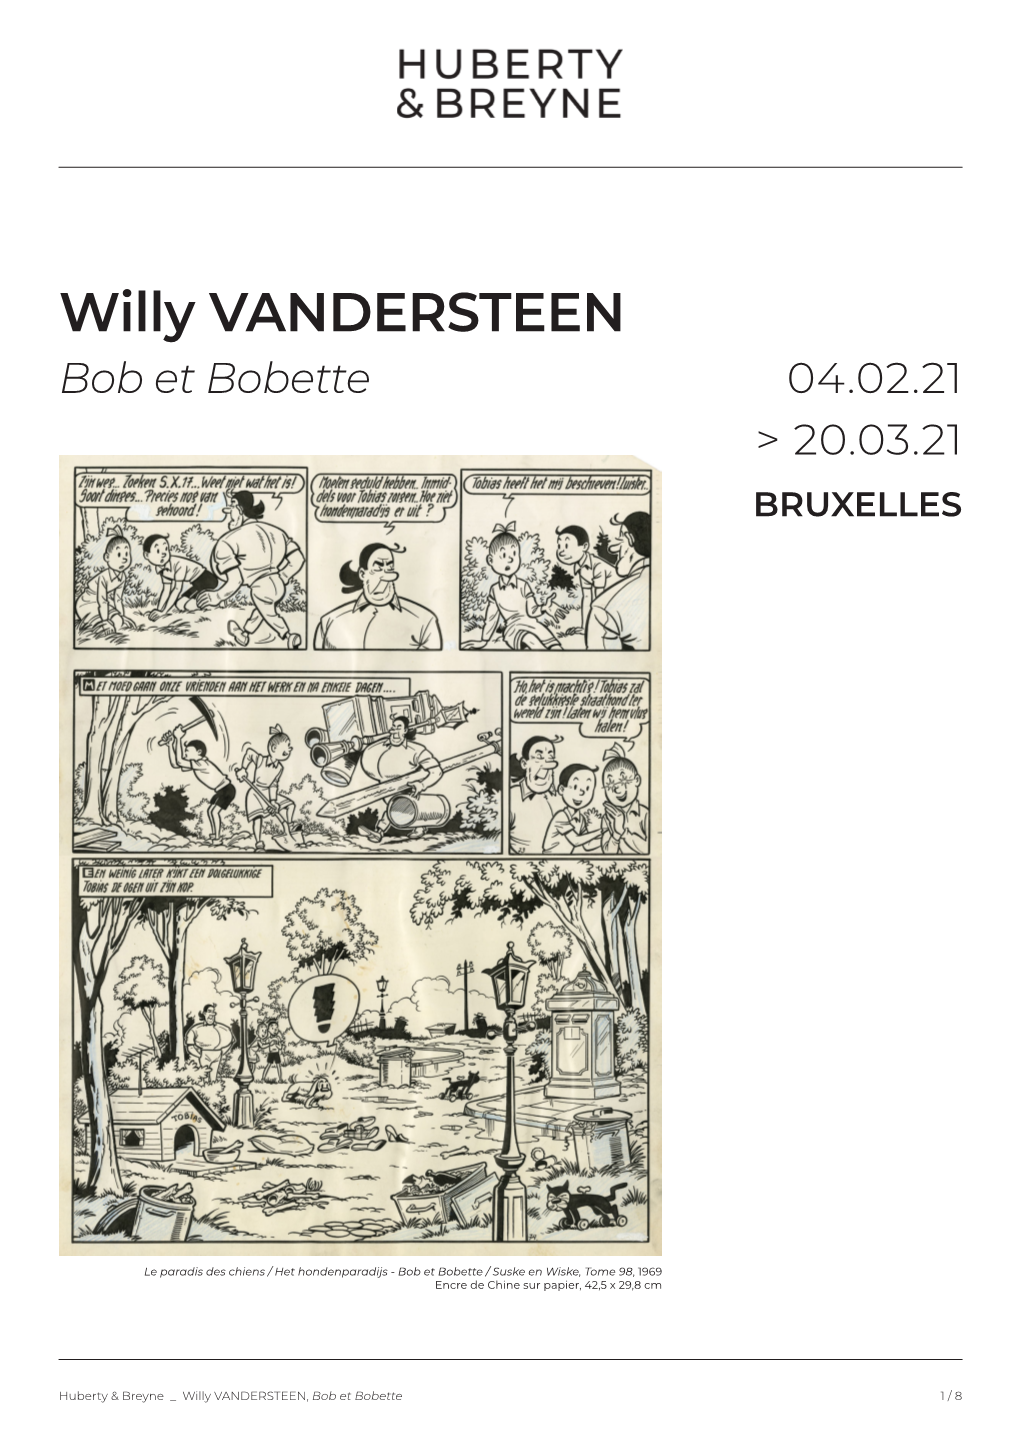 Willy VANDERSTEEN Bob Et Bobette 04.02.21 > 20.03.21 BRUXELLES